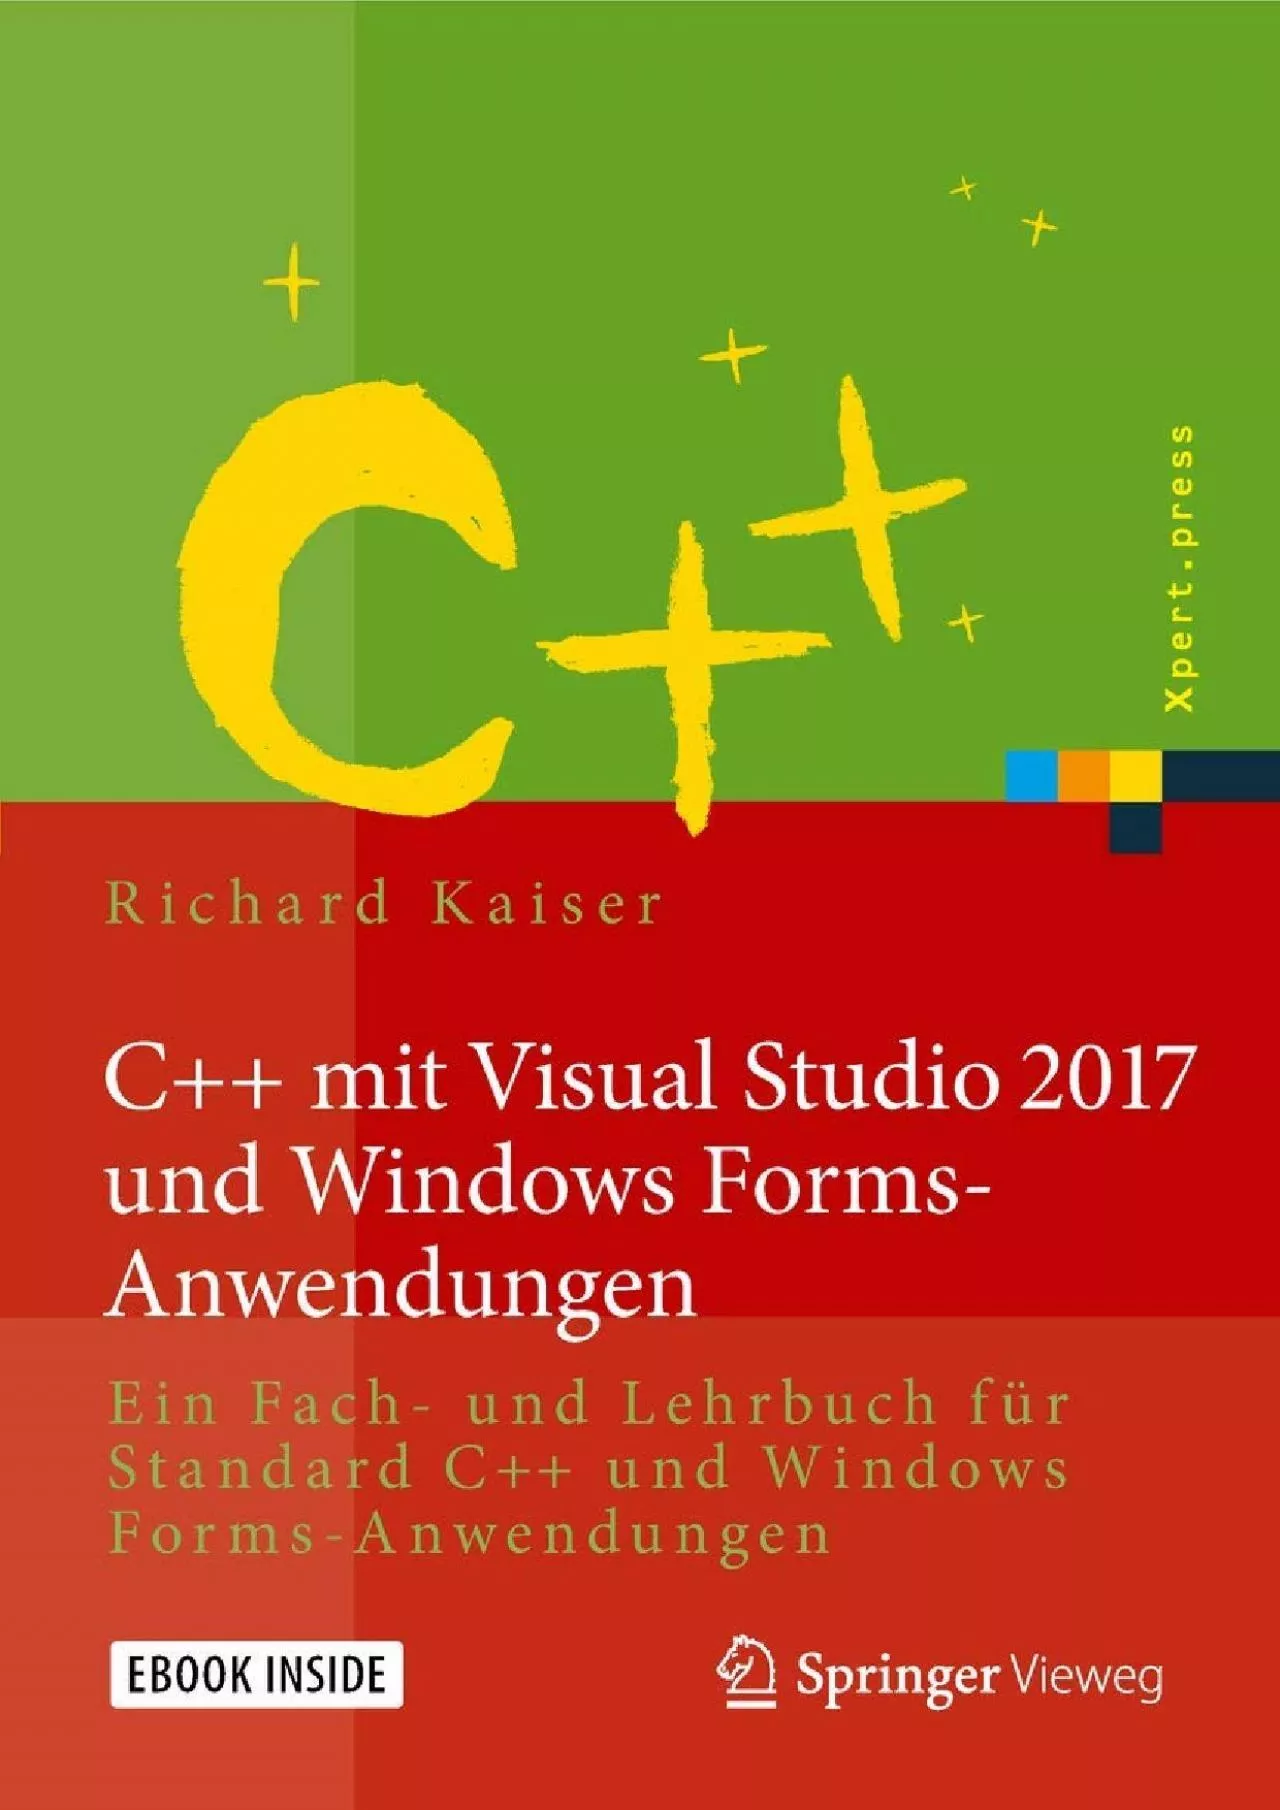 [READING BOOK]-C++ mit Visual Studio 2017 und Windows Forms-Anwendungen: Ein Fach- und